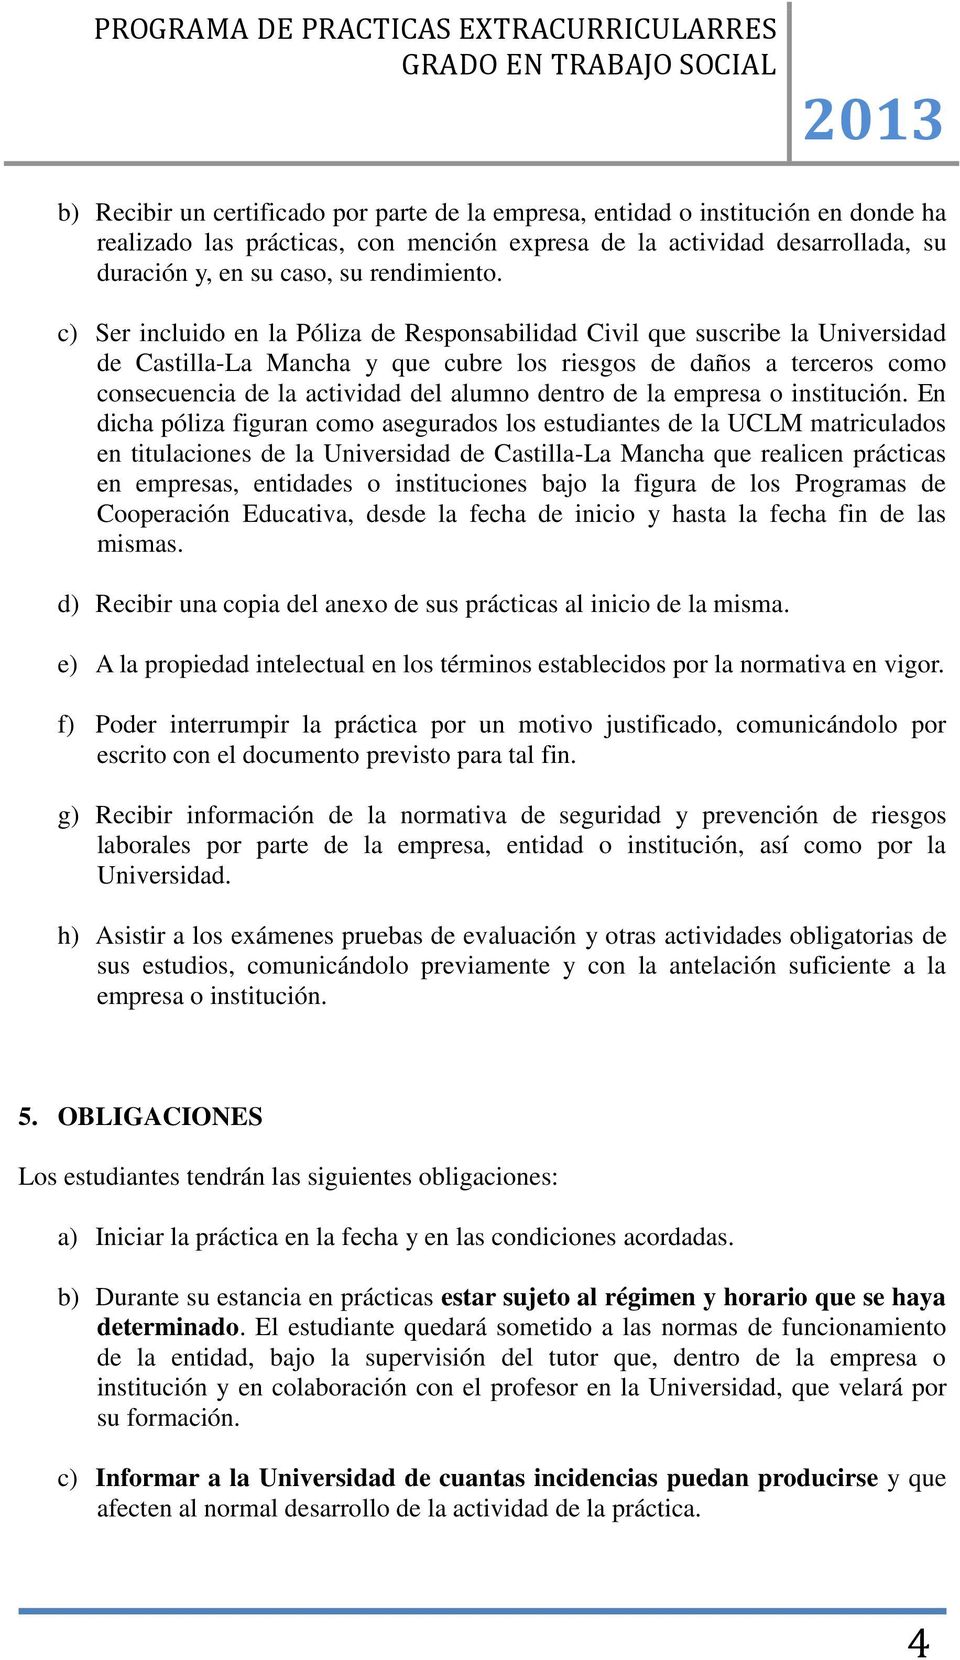 c) Ser incluido en la Póliza de Responsabilidad Civil que suscribe la Universidad de Castilla-La Mancha y que cubre los riesgos de daños a terceros como consecuencia de la actividad del alumno dentro